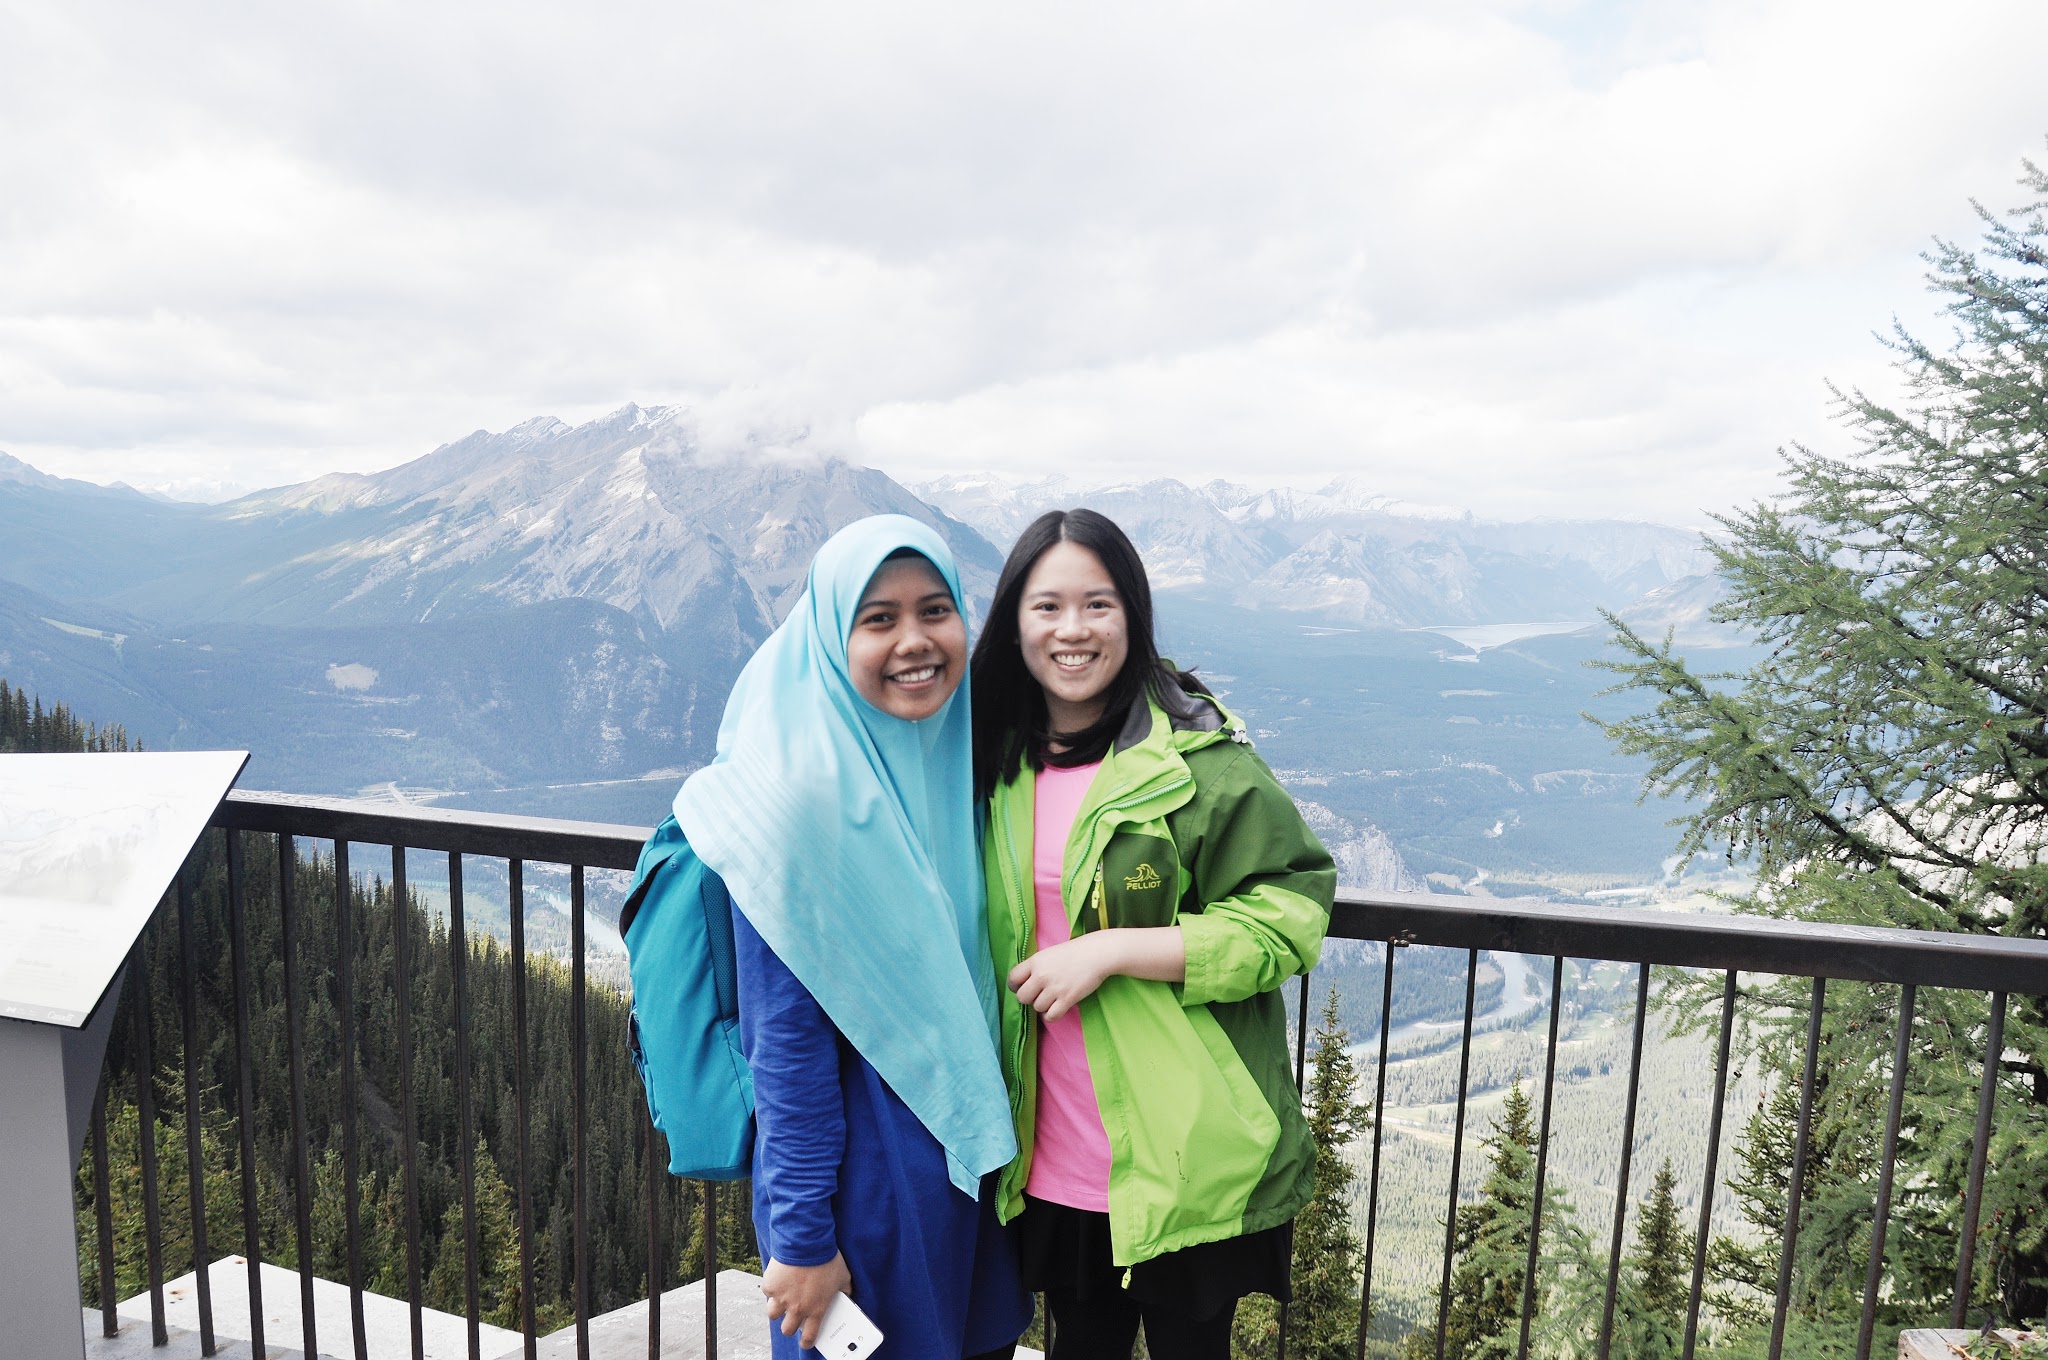 Farah & Amanda at Banff National Park